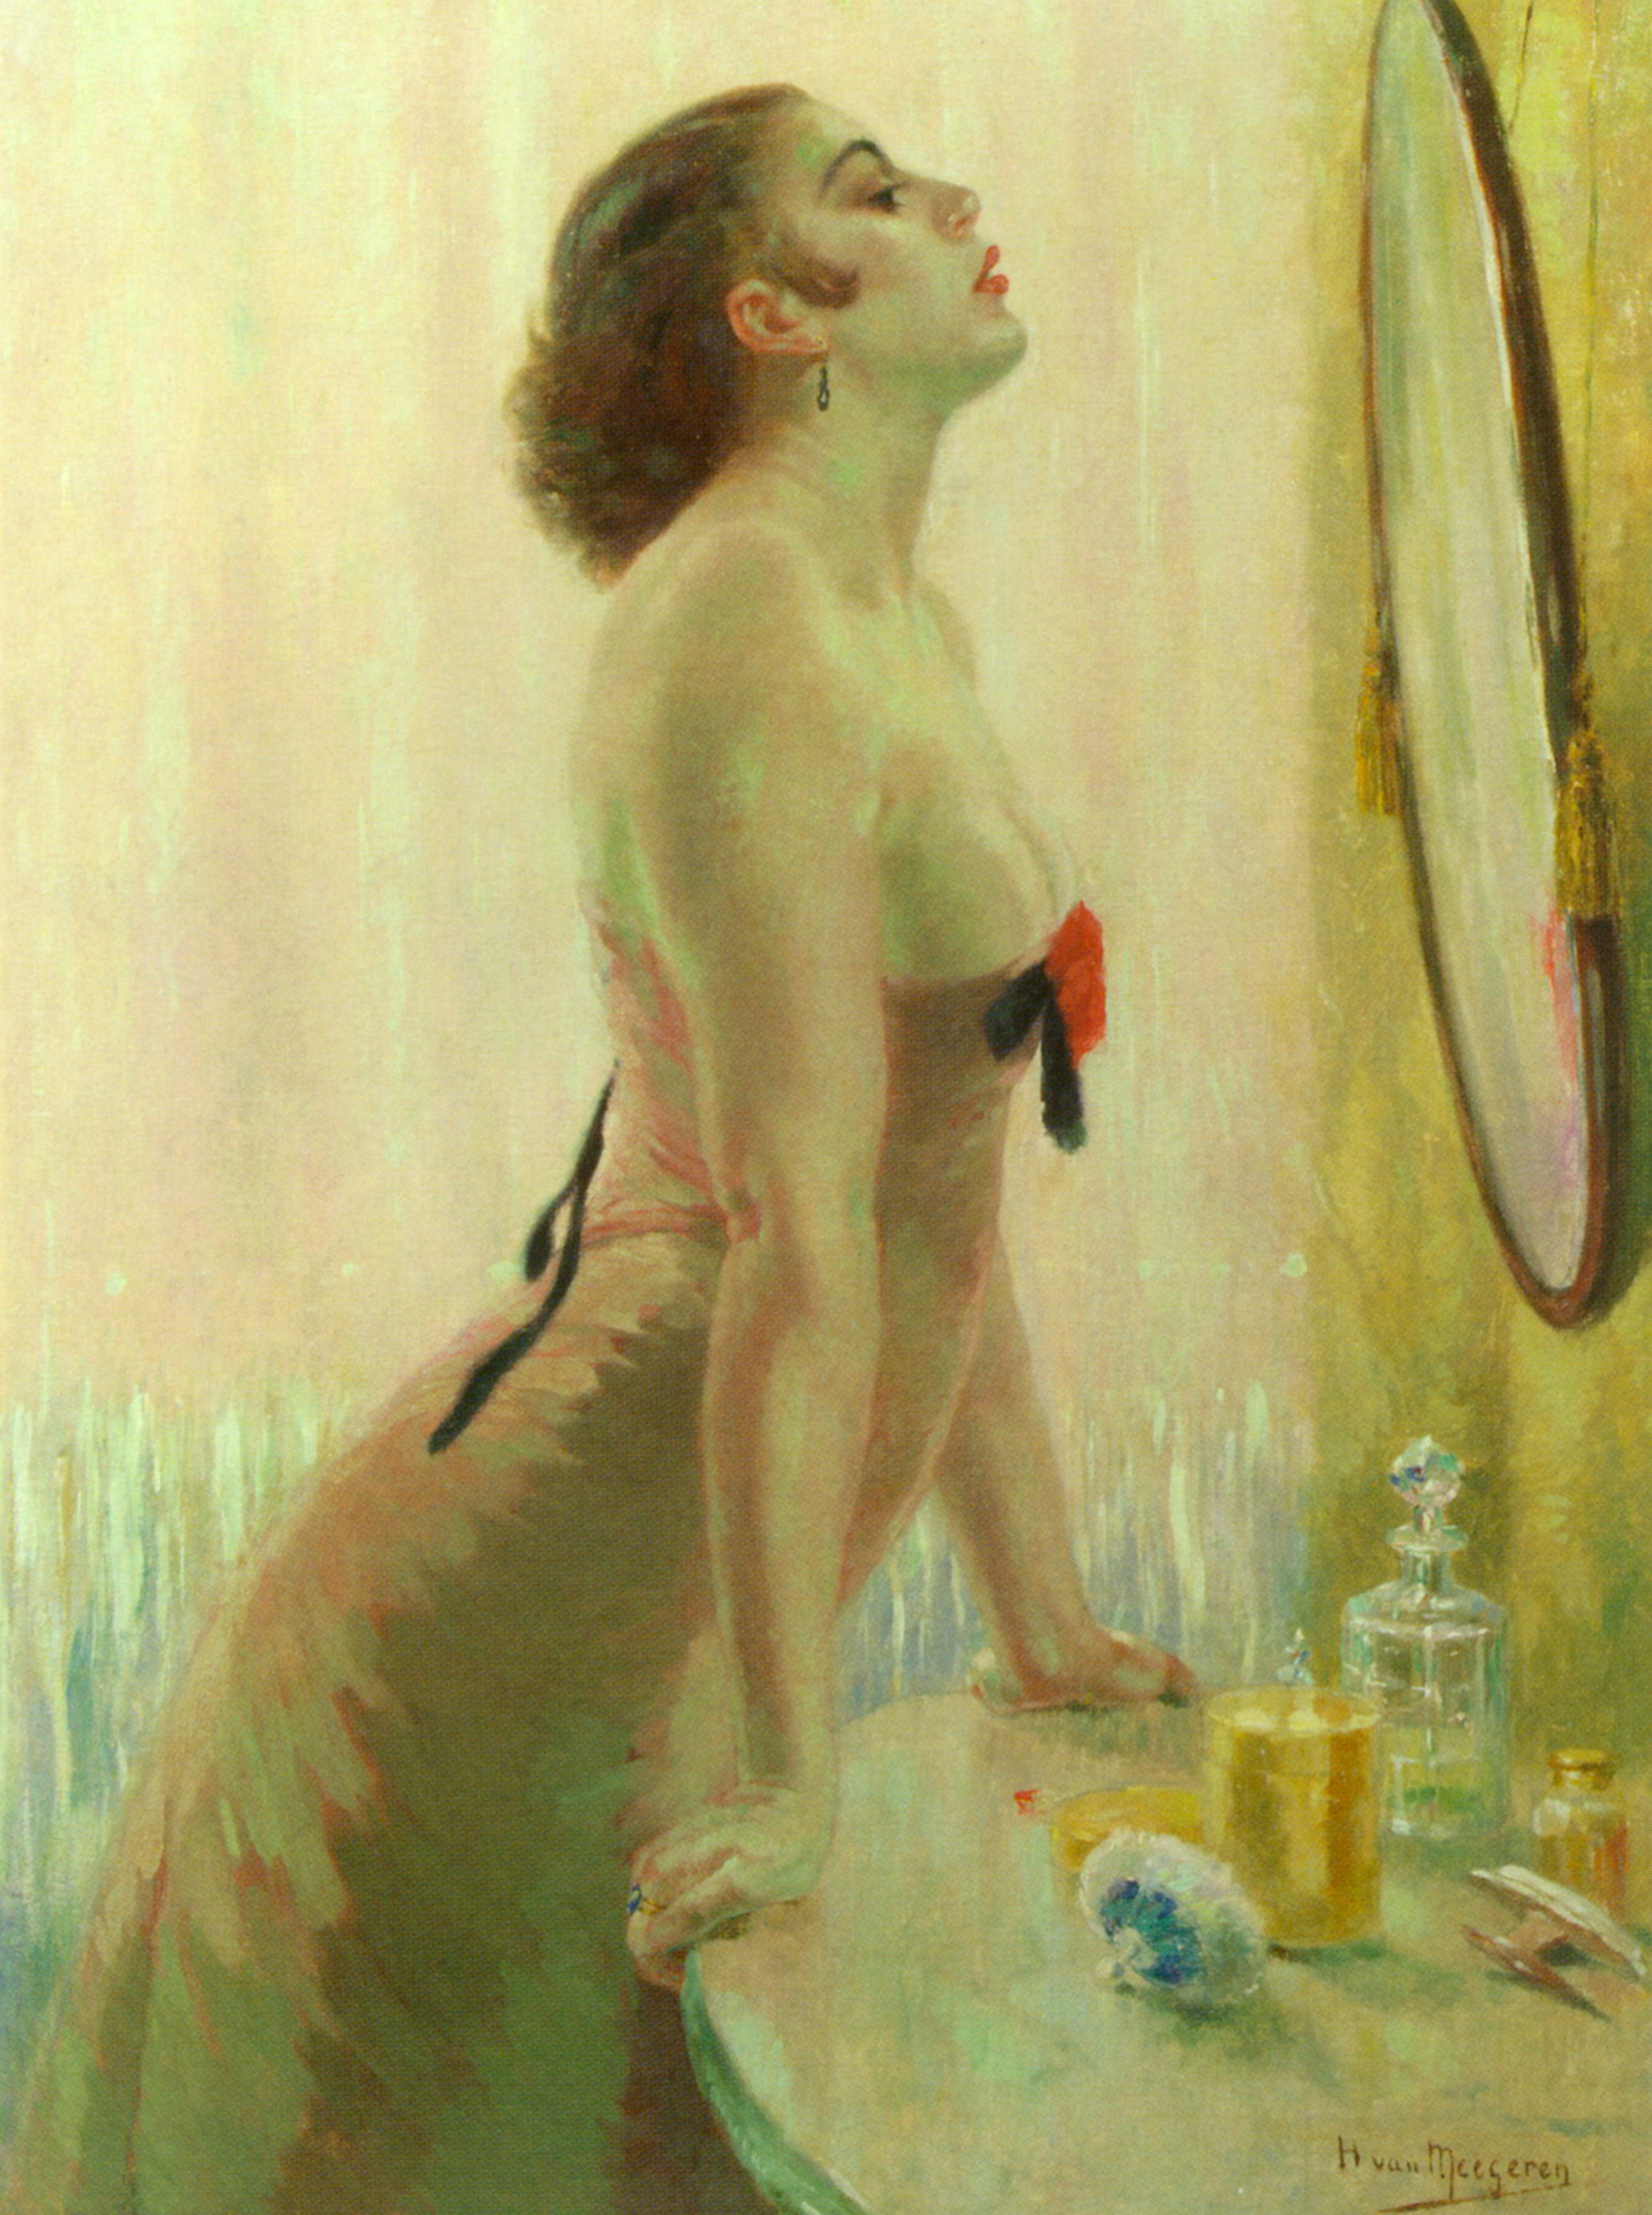 Smoking naked painting telling stories